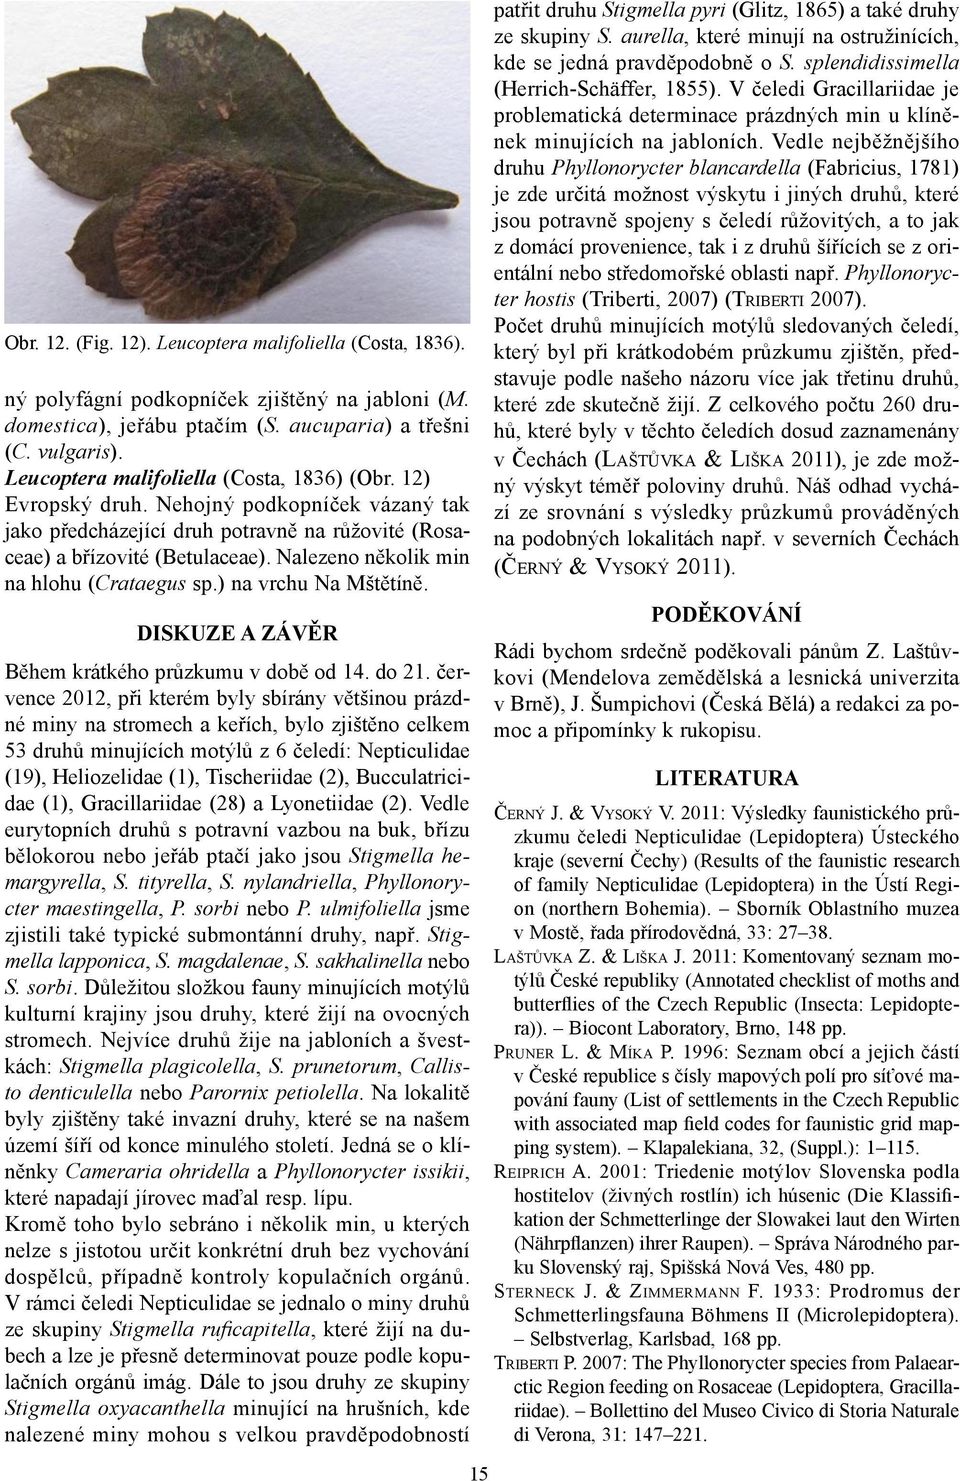 Nalezeno několik min na hlohu (Crataegus sp.) na vrchu Na Mštětíně. DISKUZE A ZÁVĚR Během krátkého průzkumu v době od 14. do 21.